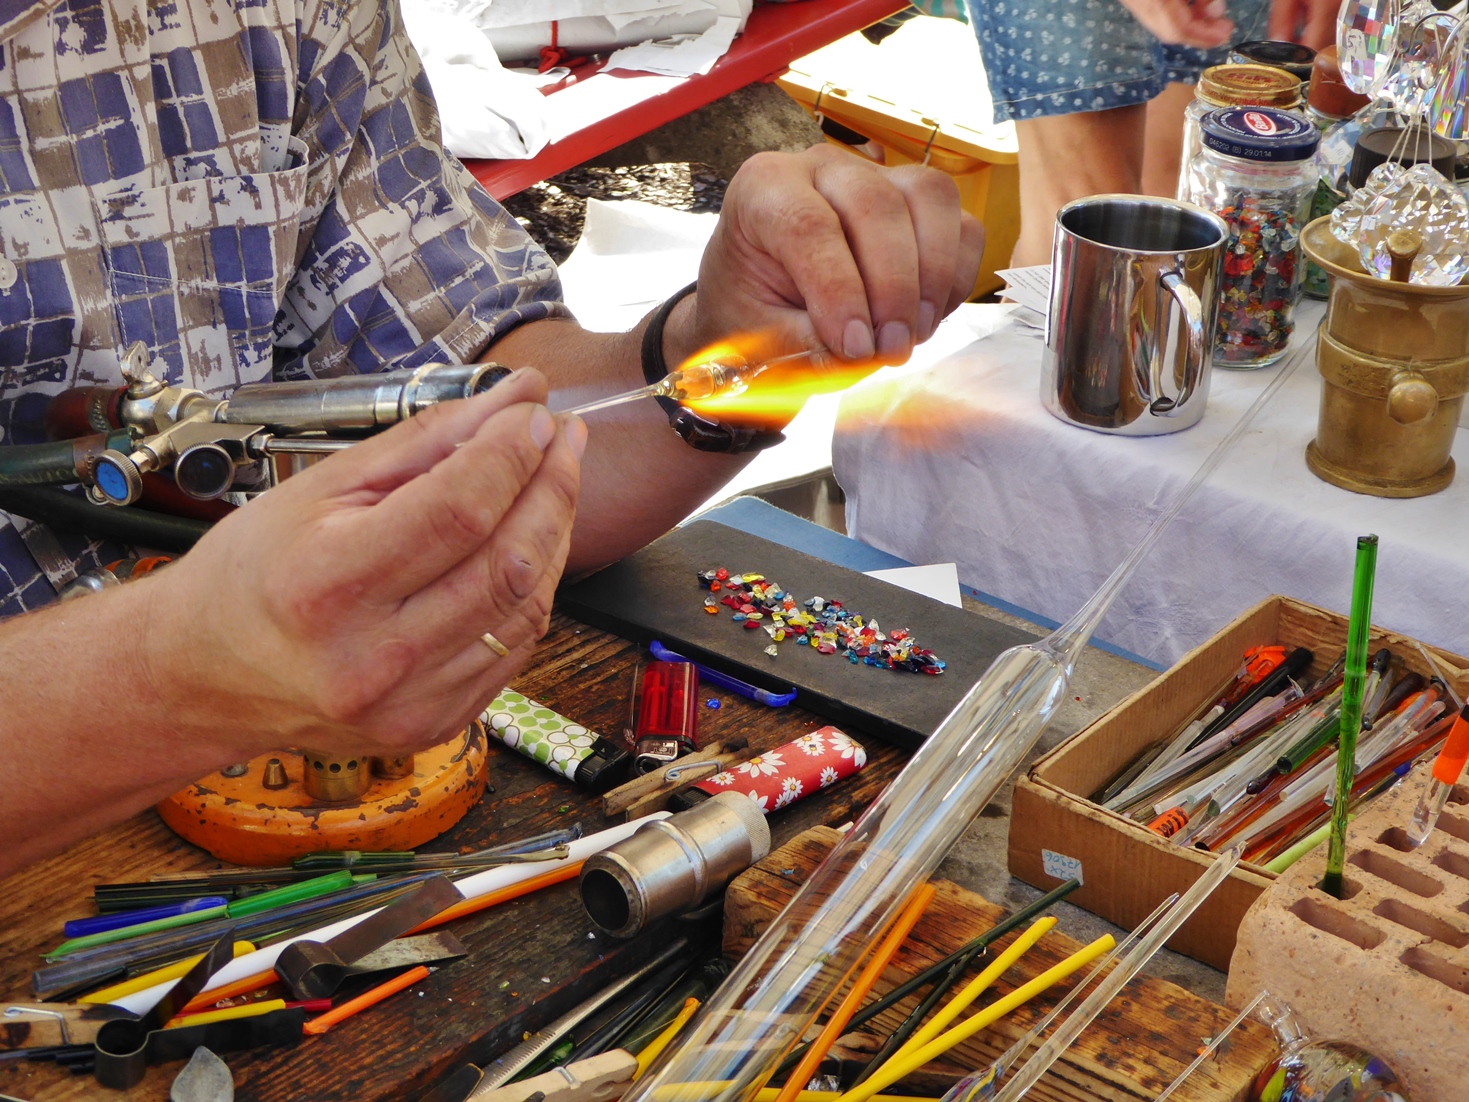  Kunsthandwerkermarkt - Ein Künstler bei der Arbeit mit Glas 